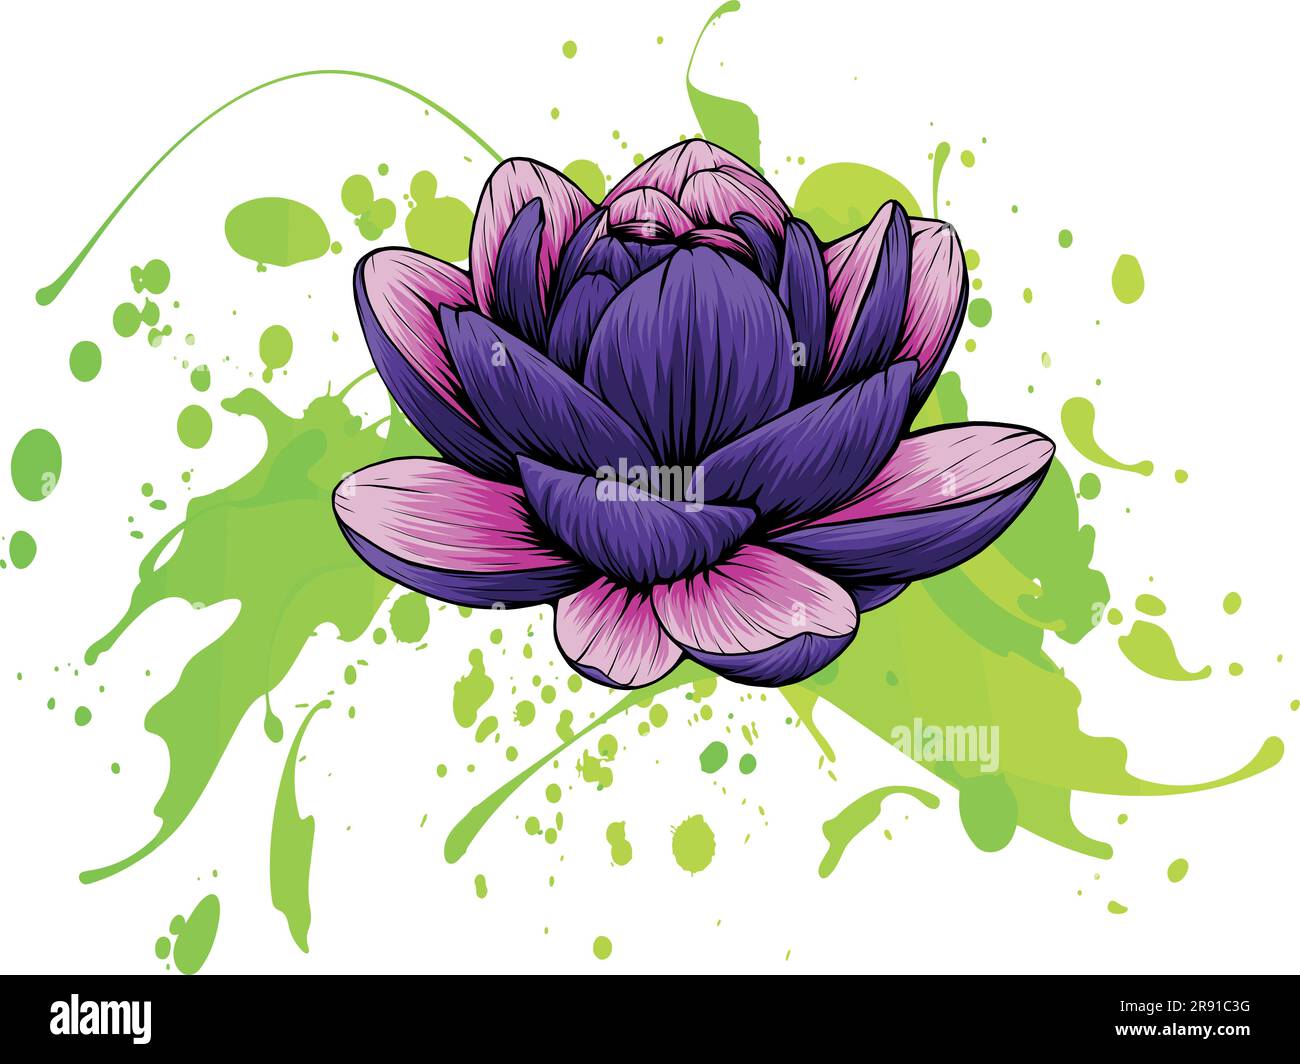 Illustrazione vettoriale di Lily Lotus isolato su sfondo bianco Illustrazione Vettoriale